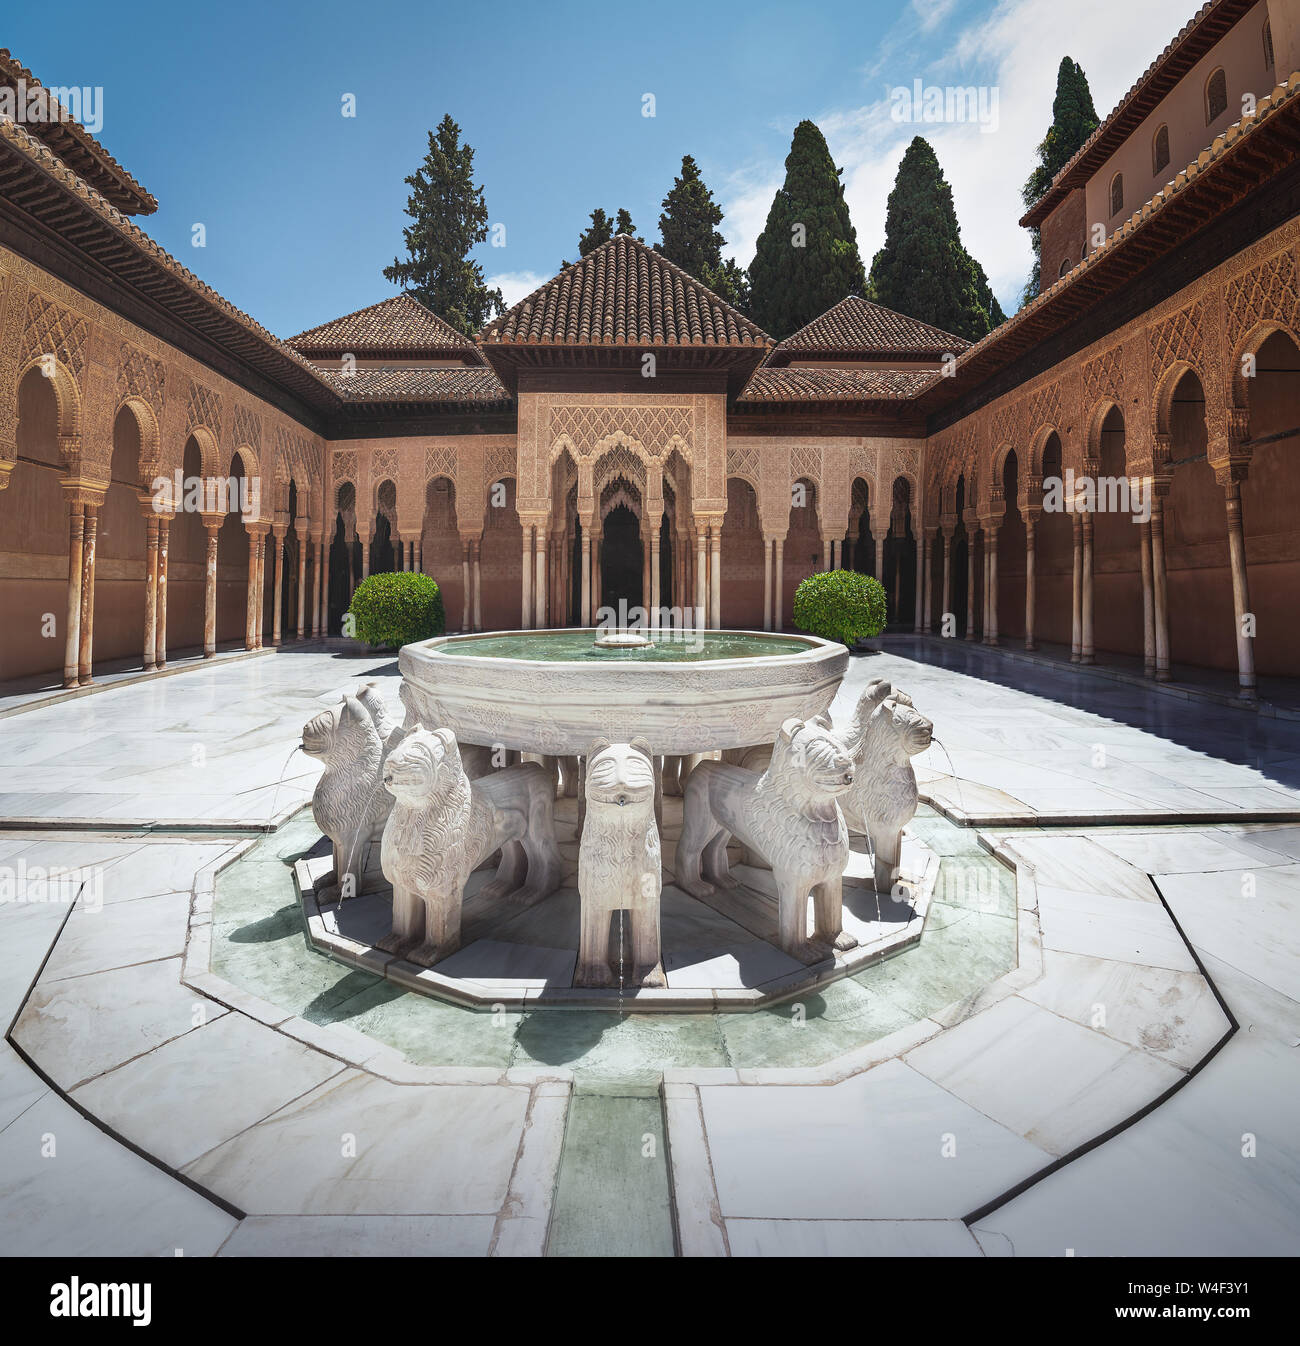 Cout des Lions dans les Palais Nasrides de l'Alhambra - Grenade, Andalousie, Espagne Banque D'Images